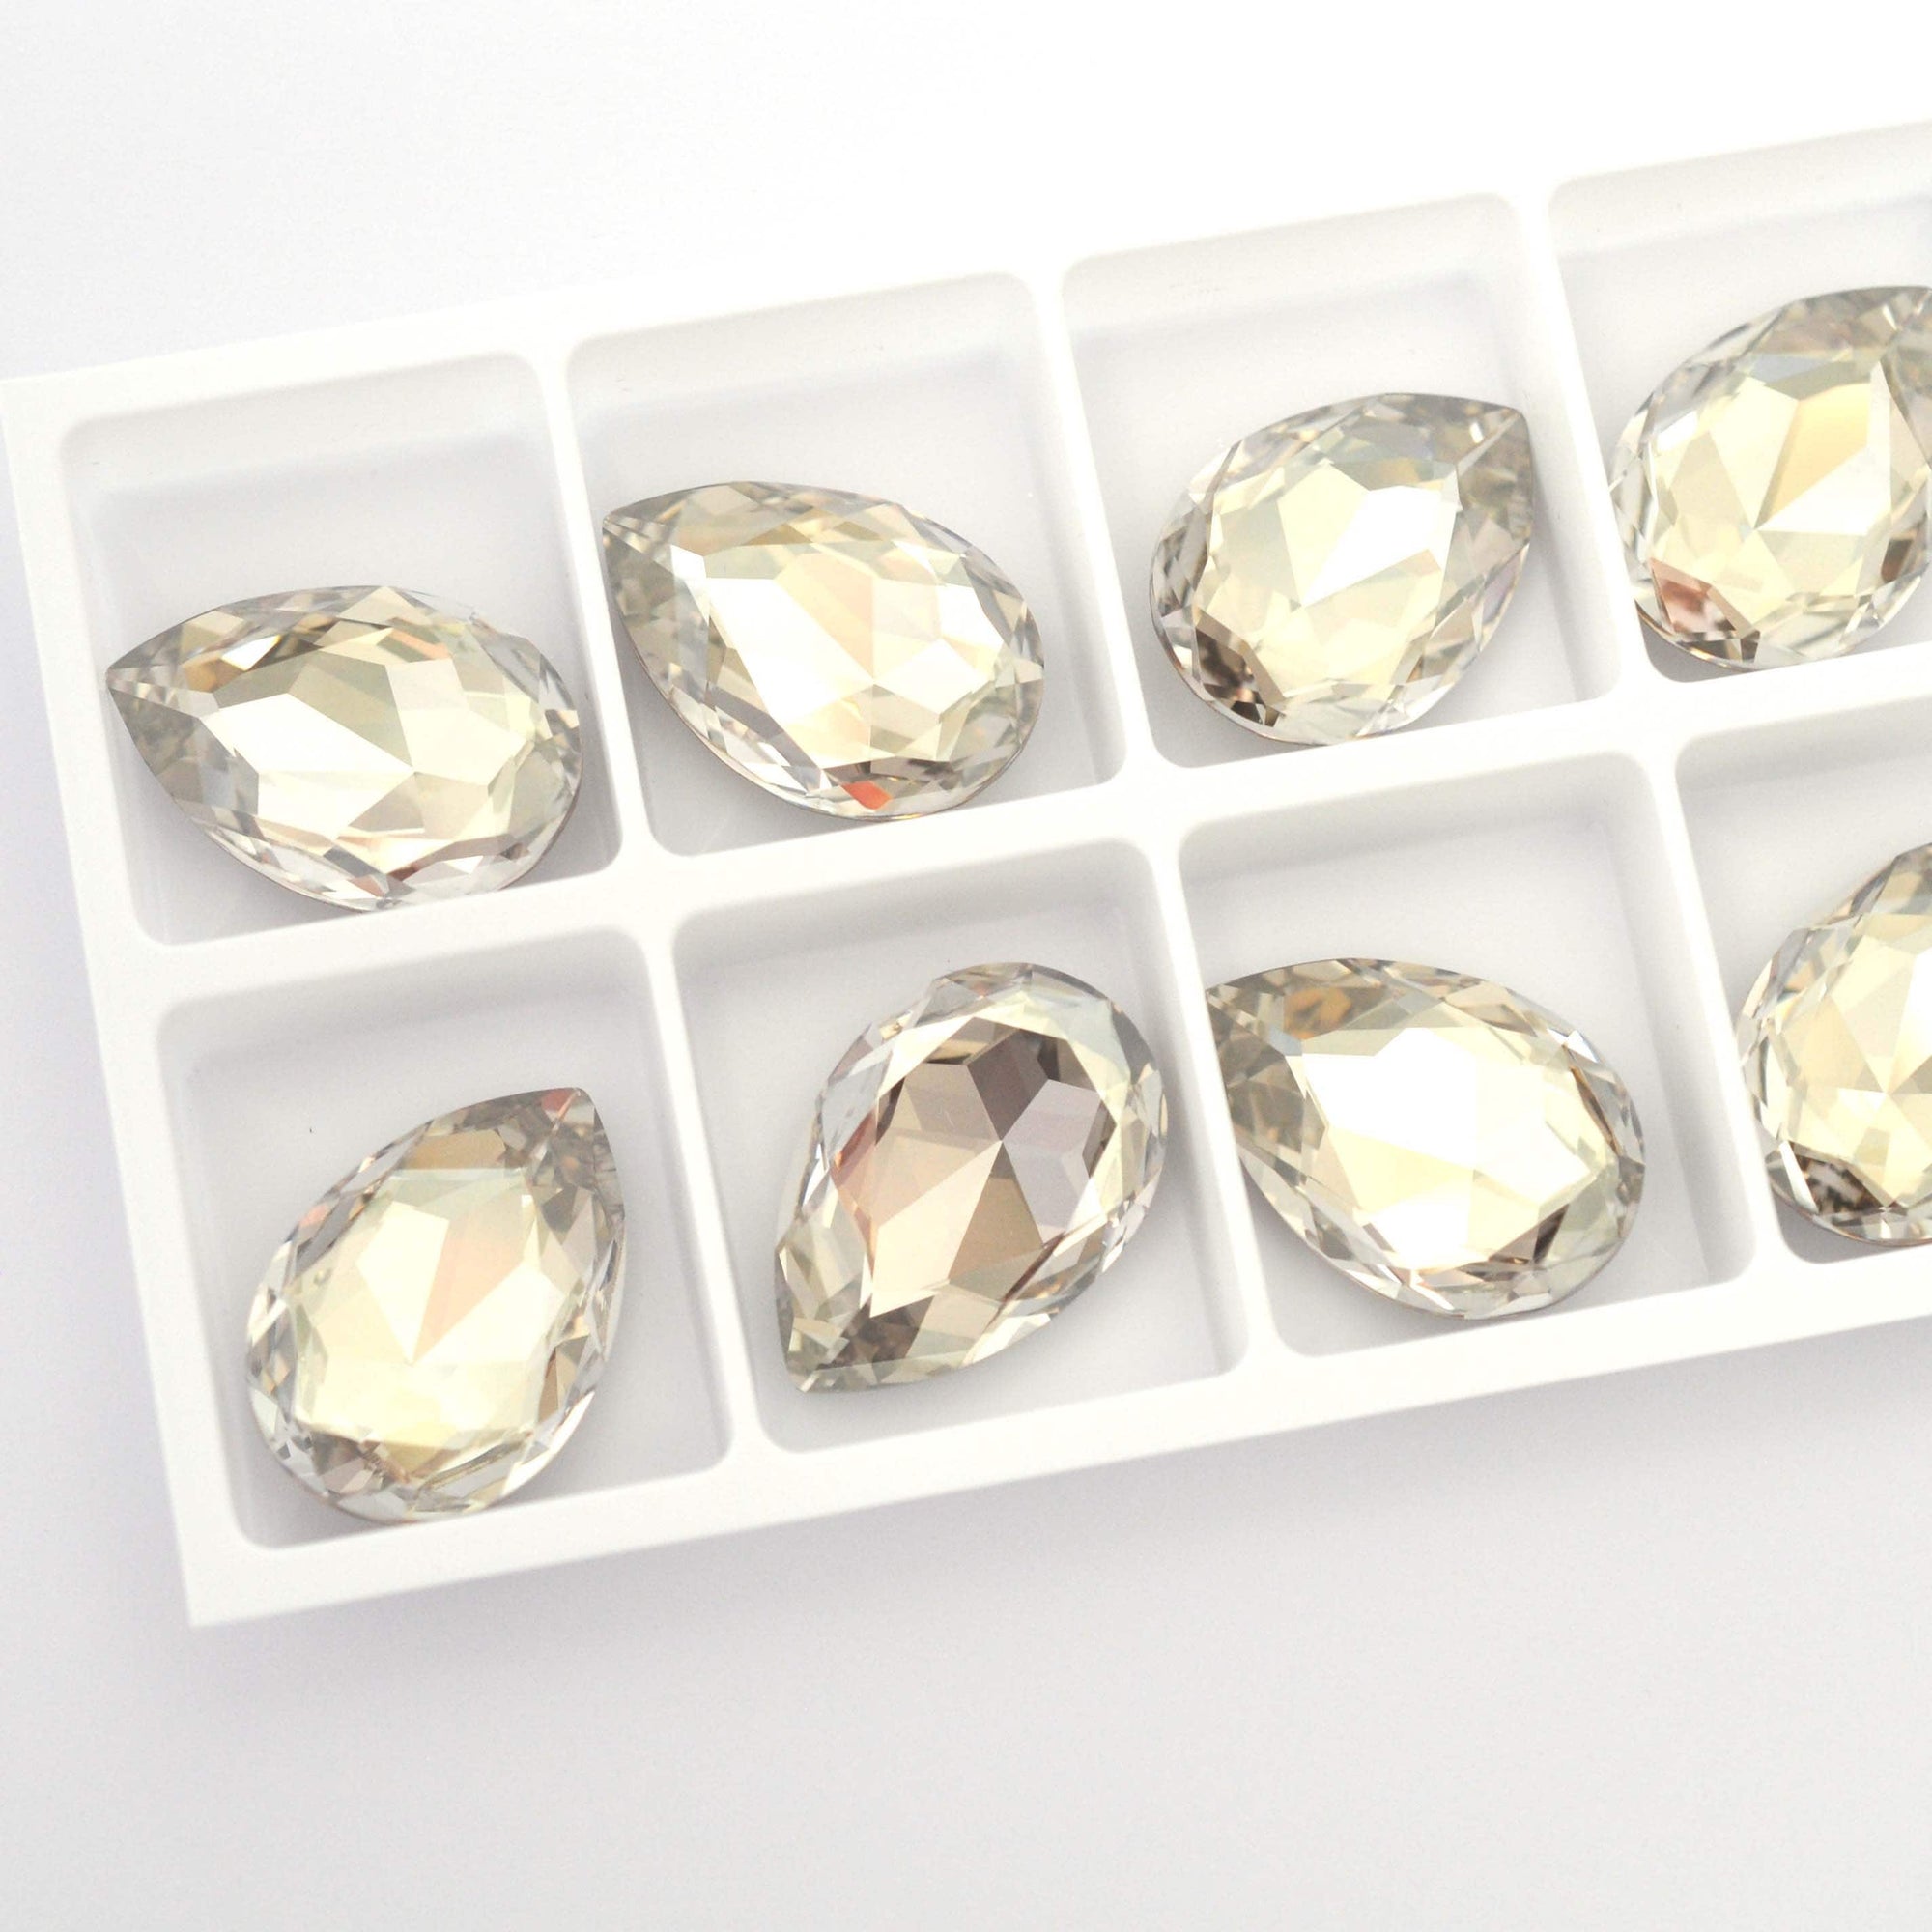 Silver Shade Pear Shape 4327 Barton Crystal 30x20mm, 1 Piece